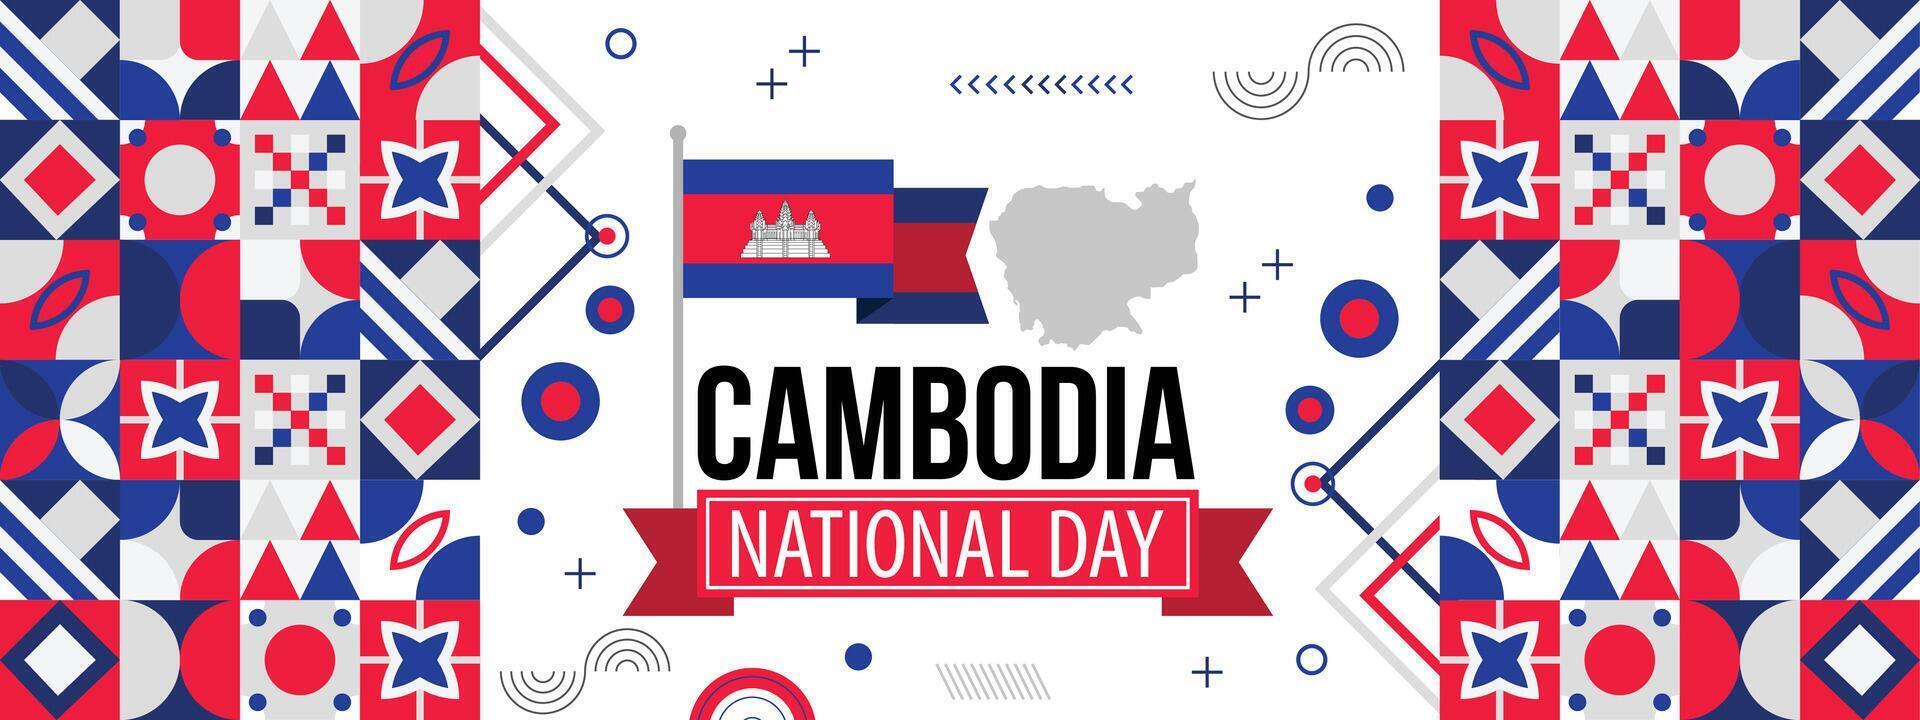 cambodia oberoende dag, baner design för cambodia nationell dag. baner med kambodjanska flagga färger tema bakgrund och geometrisk abstrakt vektor